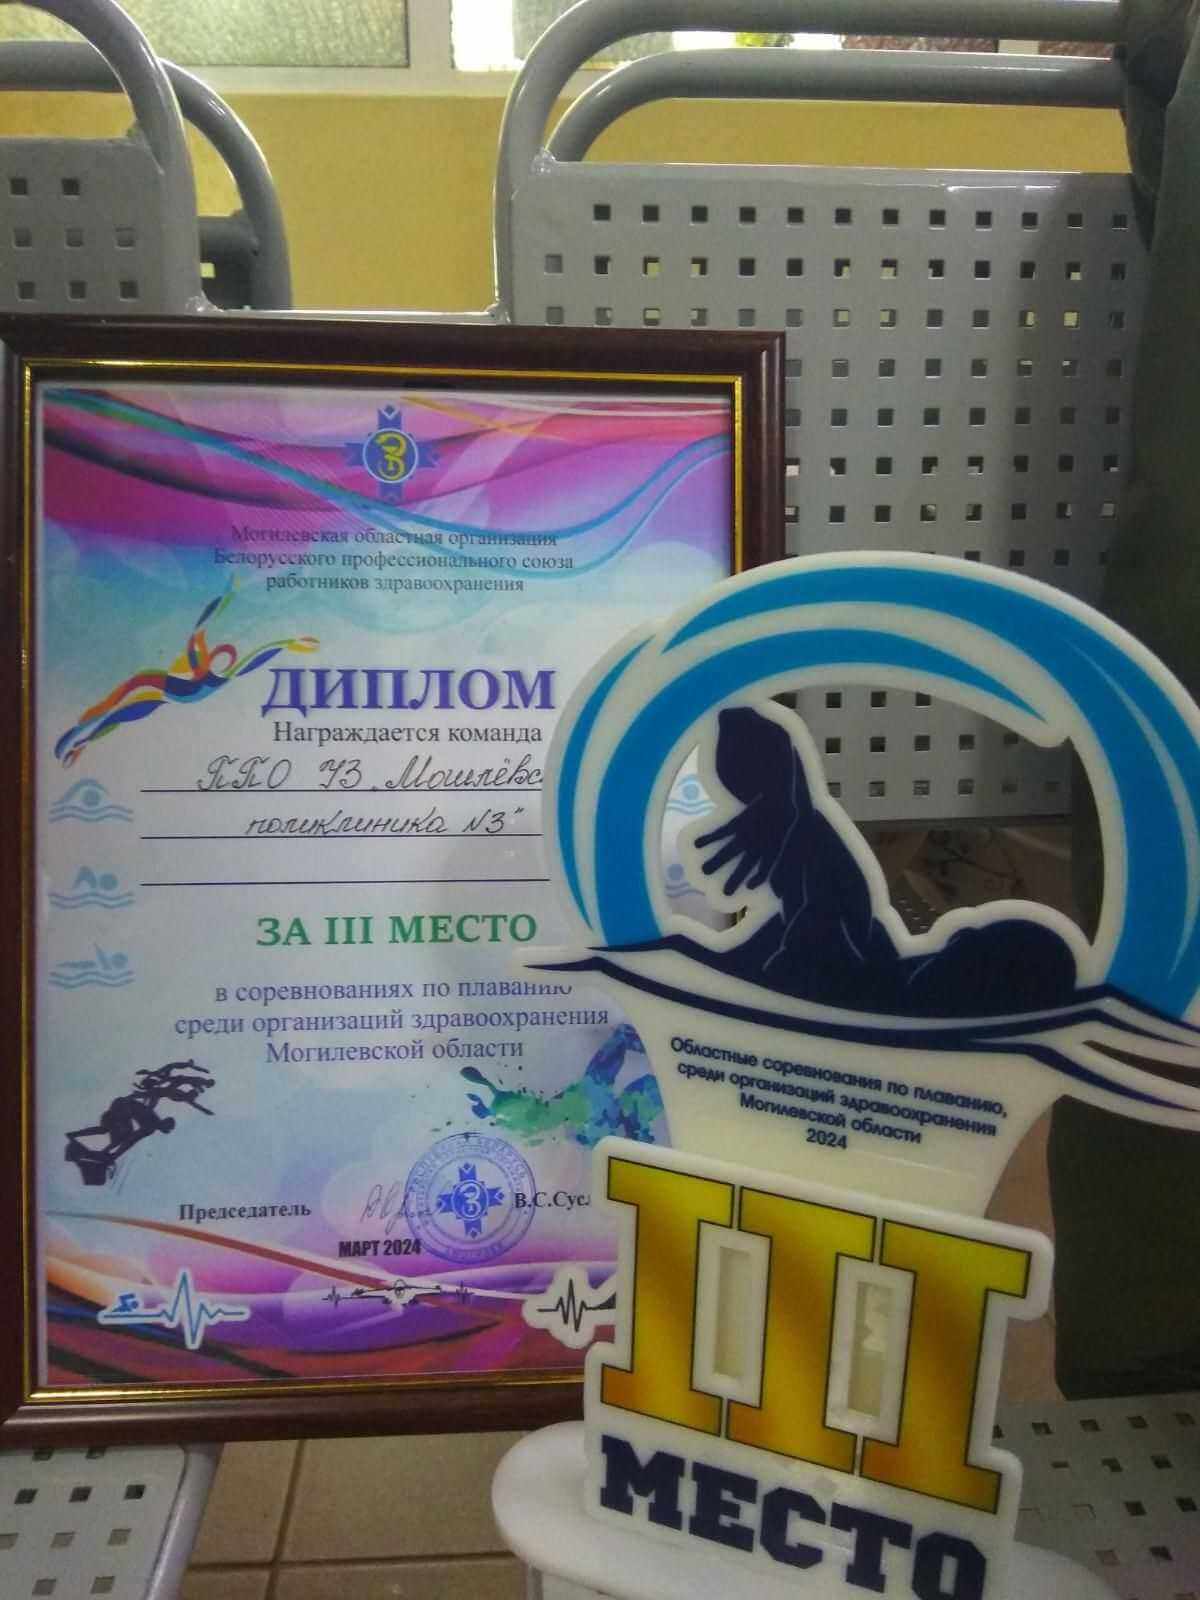 Команда поликлиники № 3  заняла 3-е место в соревнованиях по плаванию среди организаций здравоохранения Могилевской области